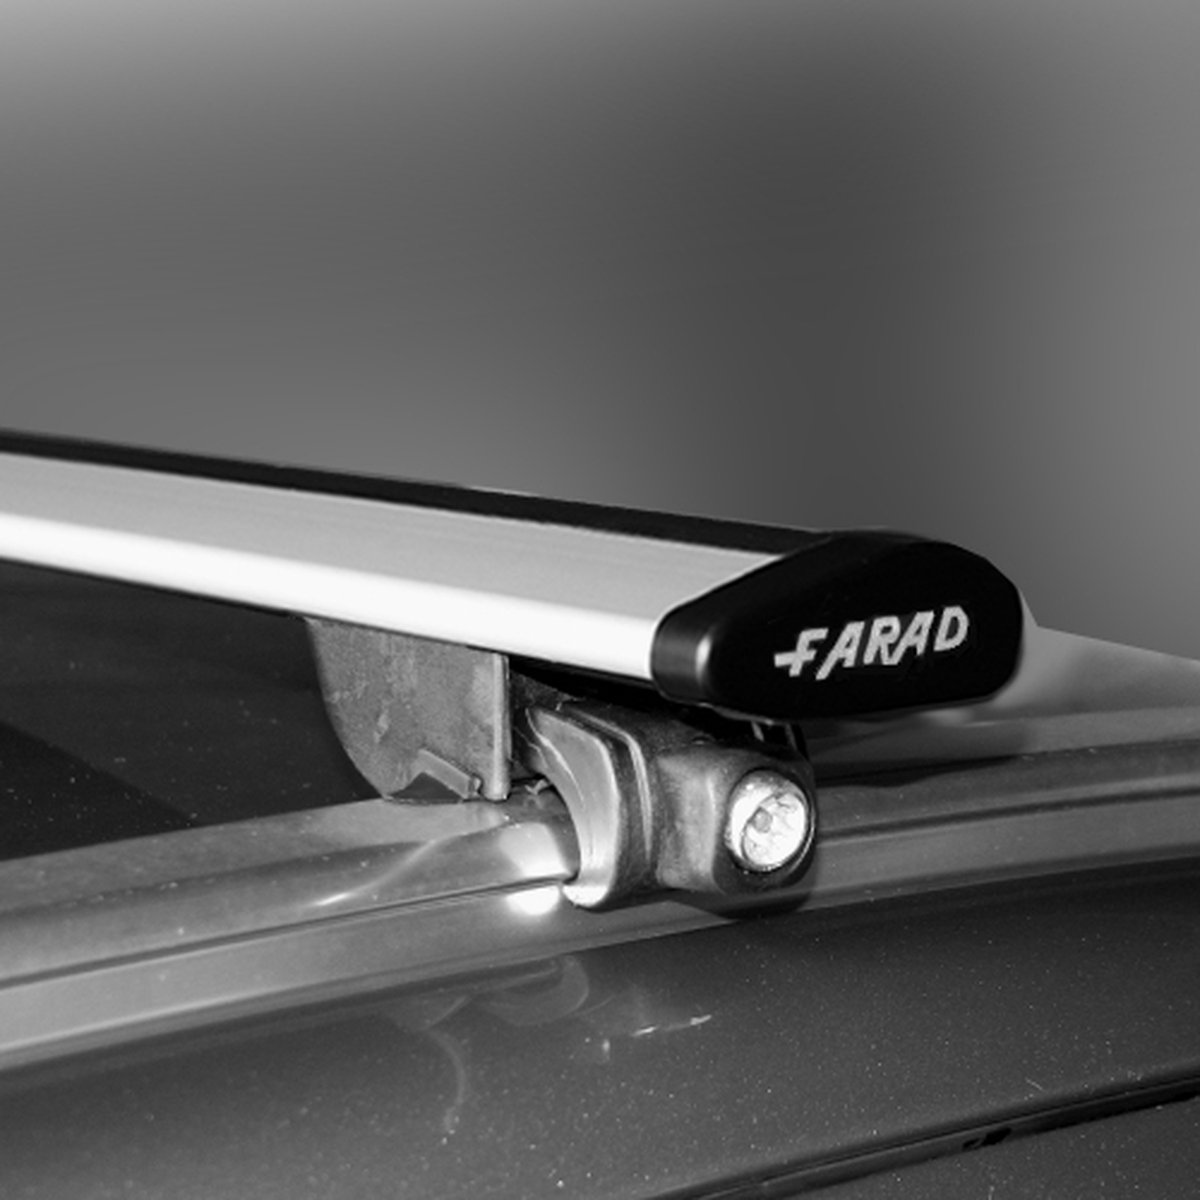 Dakdragers geschikt voor Mini Cooper 5 deurs hatchback vanaf 2014 - Wingbar - inclusief dakdrager opbergtas